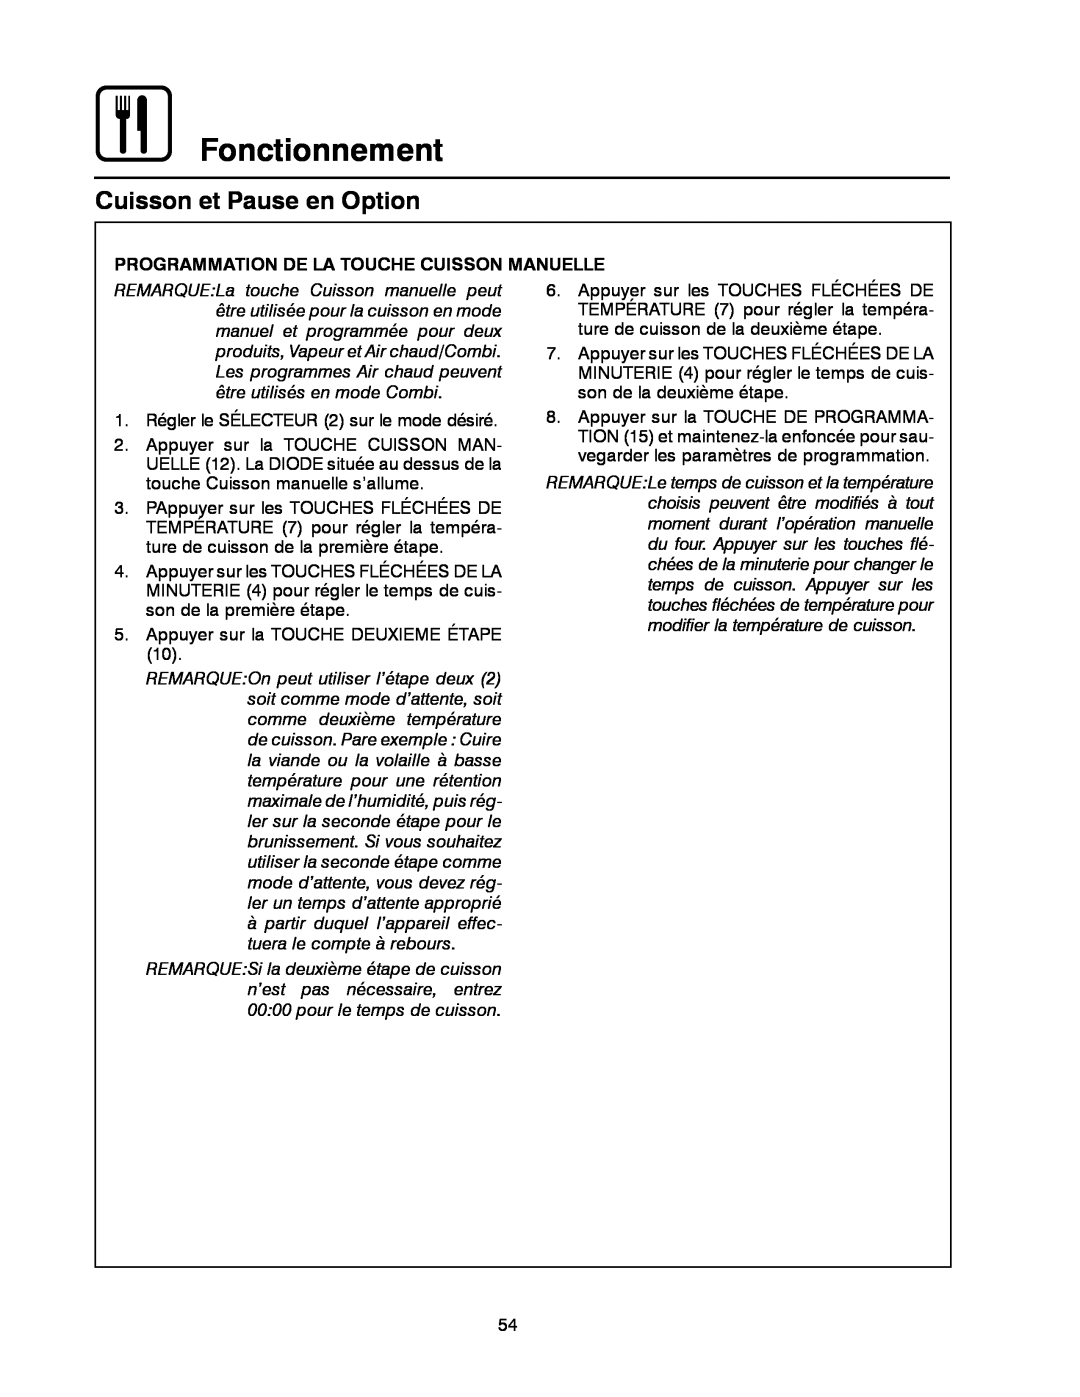 Blodgett BC-20G manual Fonctionnement, Cuisson et Pause en Option, Programmation De La Touche Cuisson Manuelle 